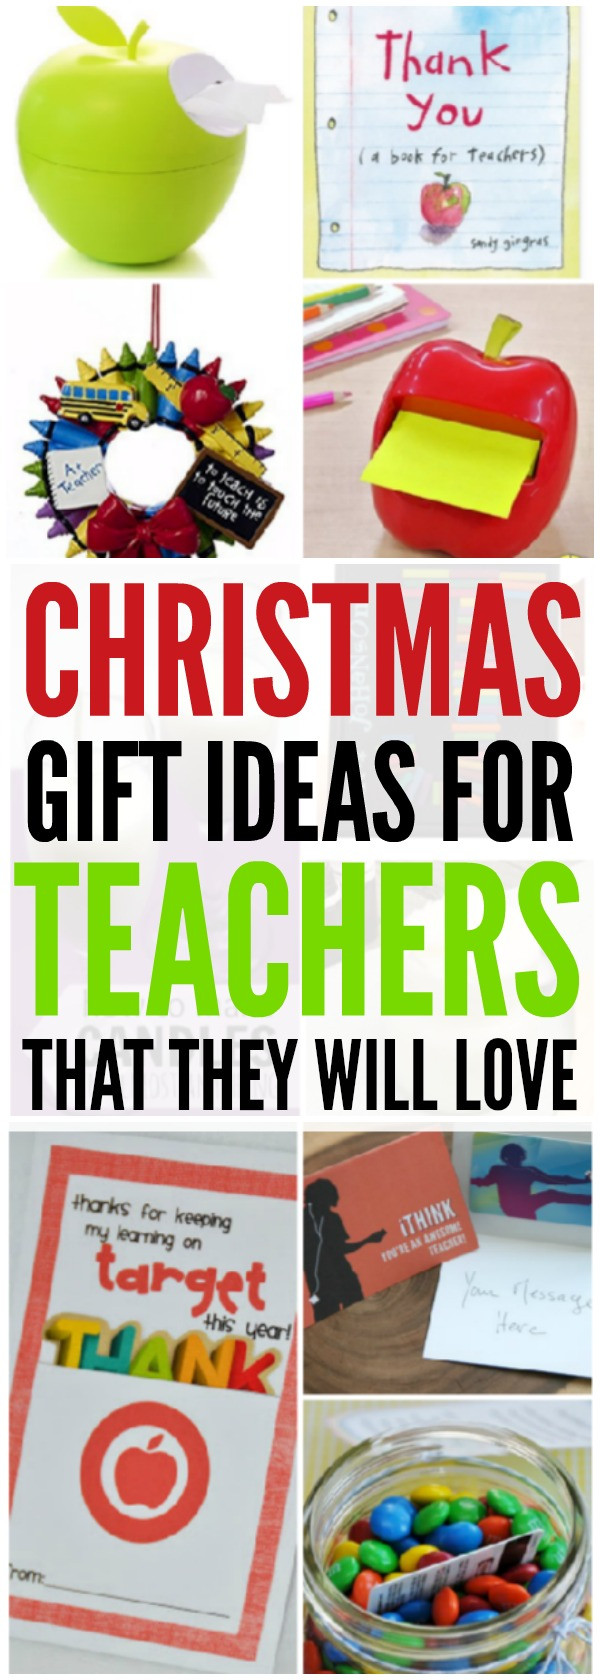 Christmas Gift Ideas For Teachers
 20 Christmas Gift Ideas for Teachers Coupon Closet